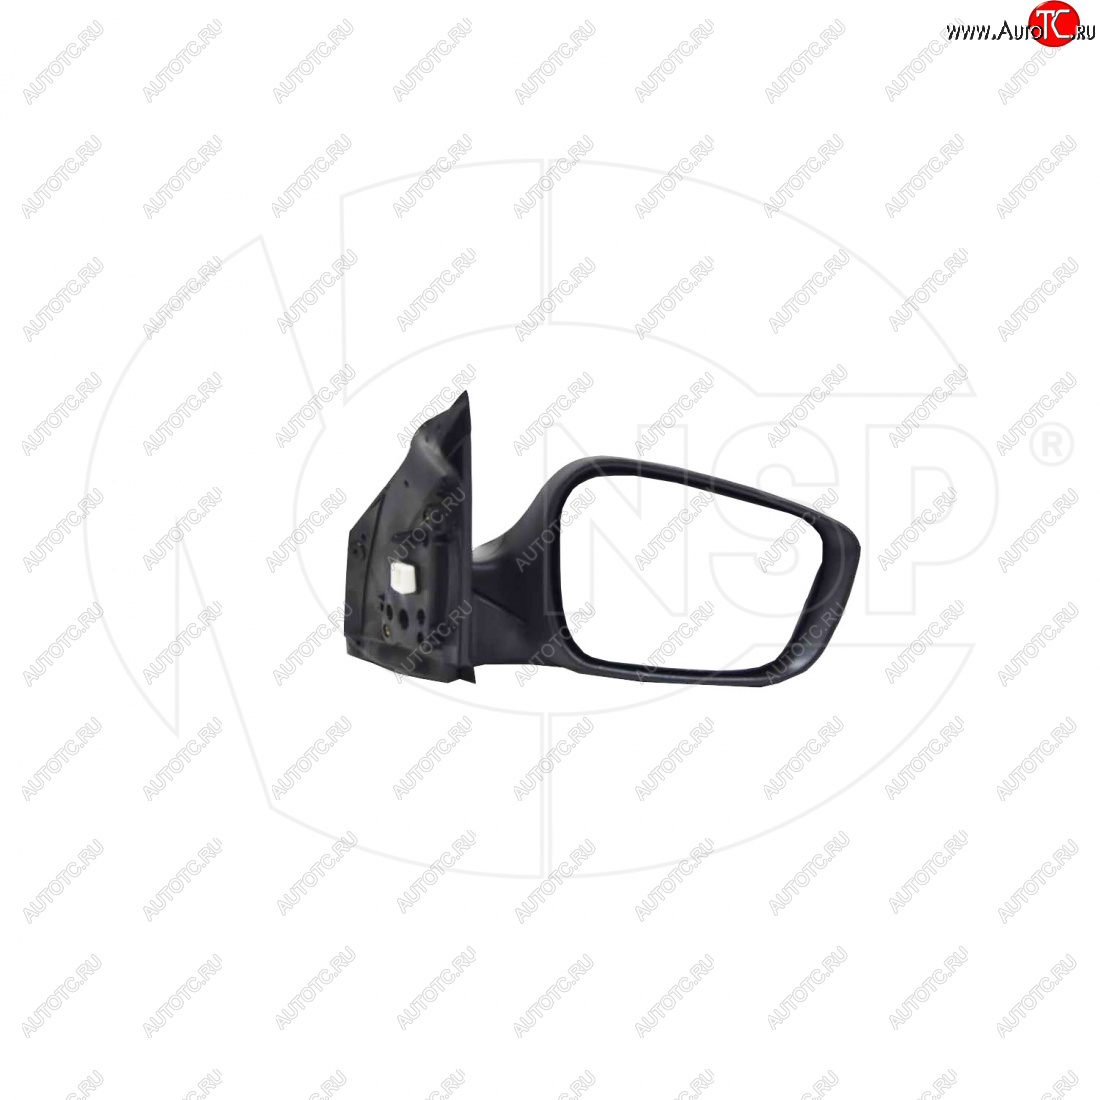 4 499 р. Зеркало зеркало заднего вида правое (регулировка, обогрев, повторитель) NSP Hyundai Solaris 1 хэтчбэк RBr рестайлинг (2014-2017) (, Неокрашенное)